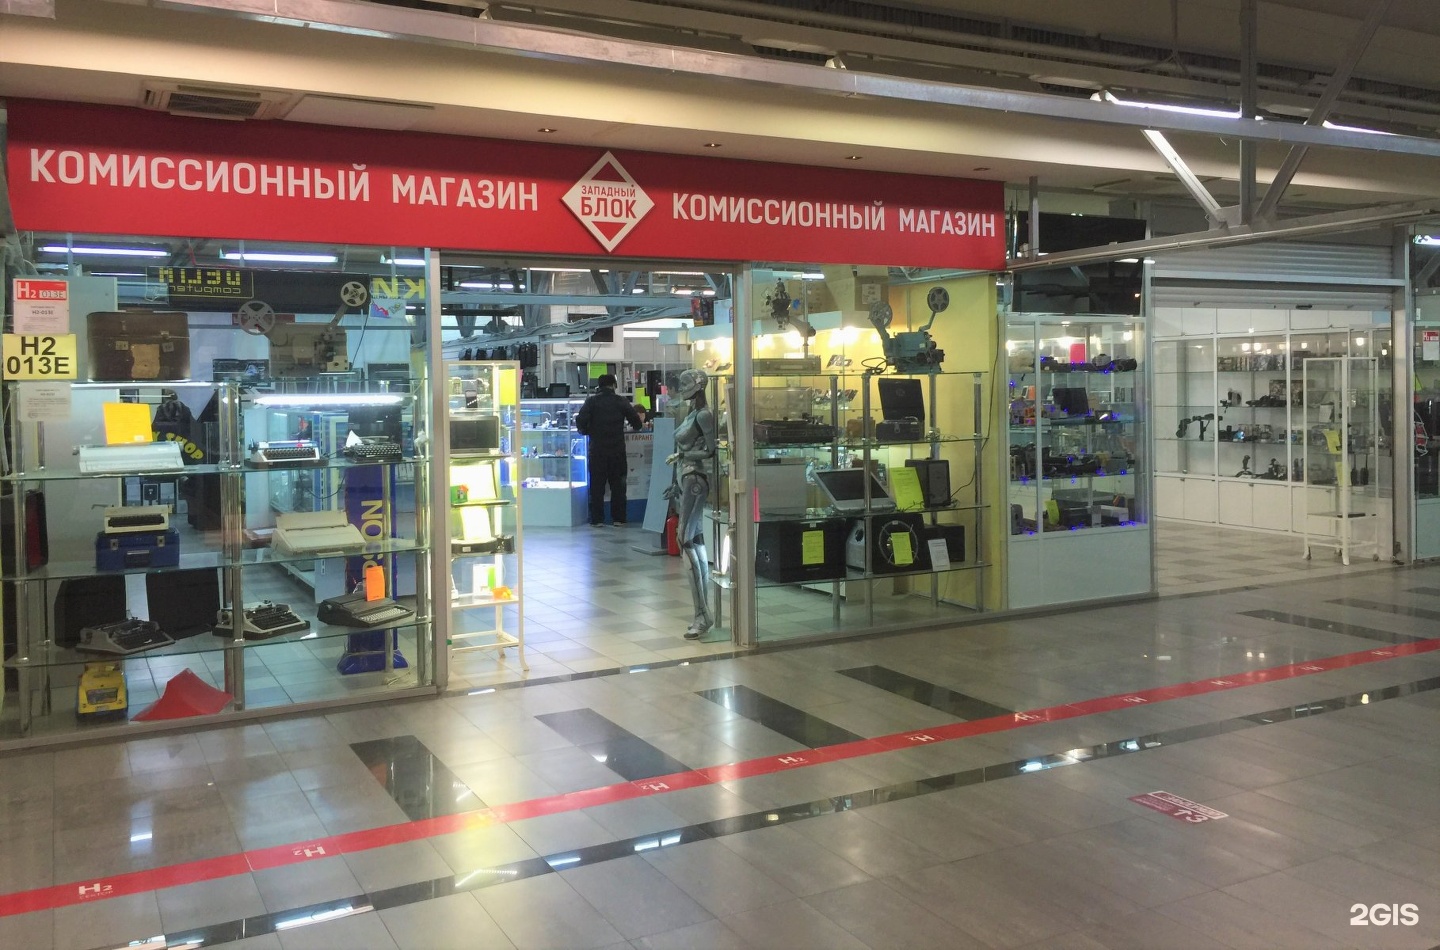 Комиссионный часов. Магазин техники в Москве. Фото Московский магазин техника. Западные магазины в России.